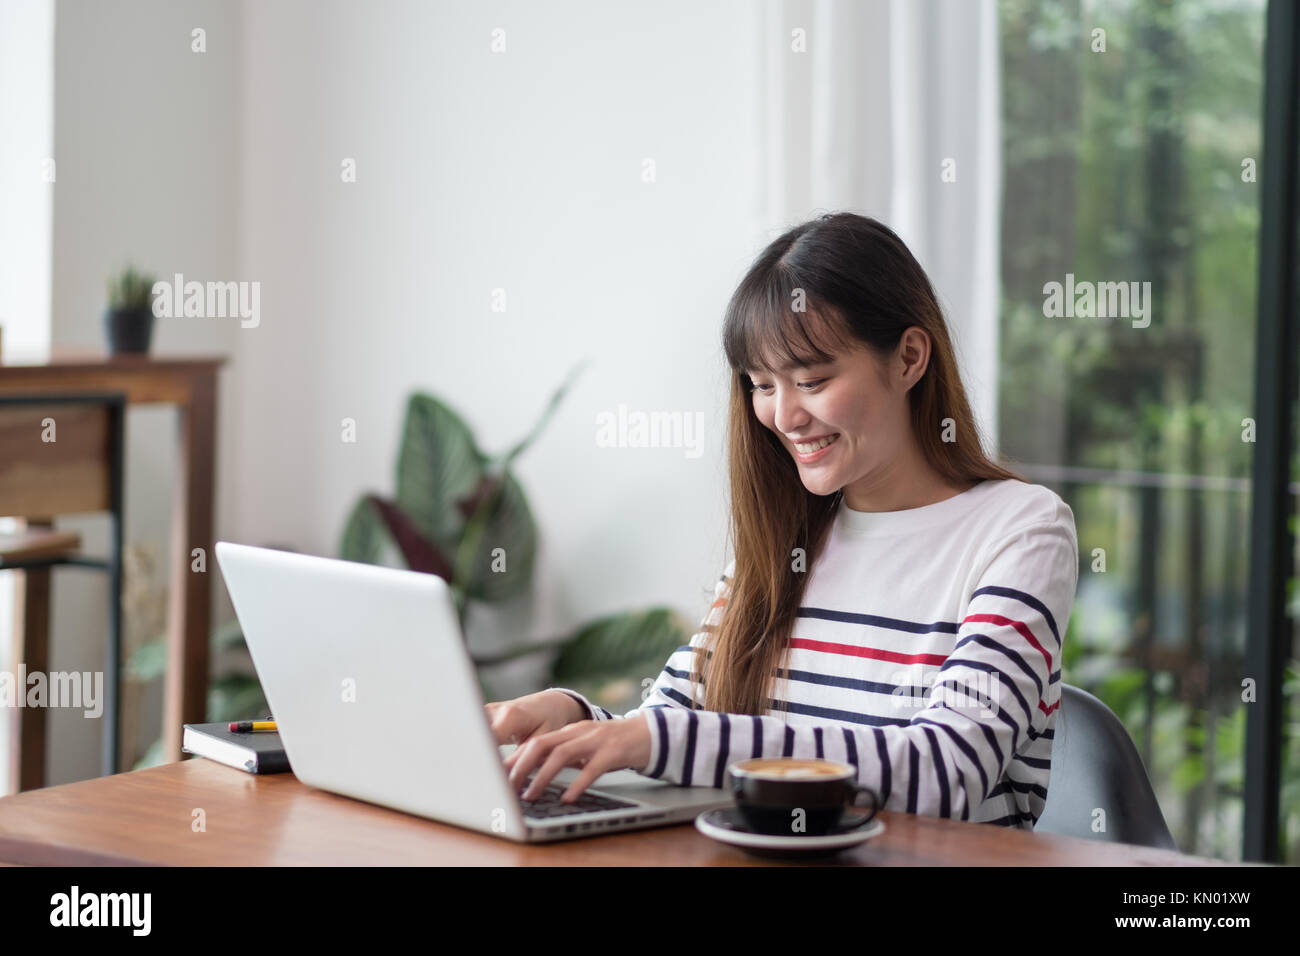 Asiatische Frau mit Laptop in der Nähe der Fenster im Cafe Restaurant, Digital Lifestyle, mit Technologie Konzept, co Arbeitsbereich Stockfoto